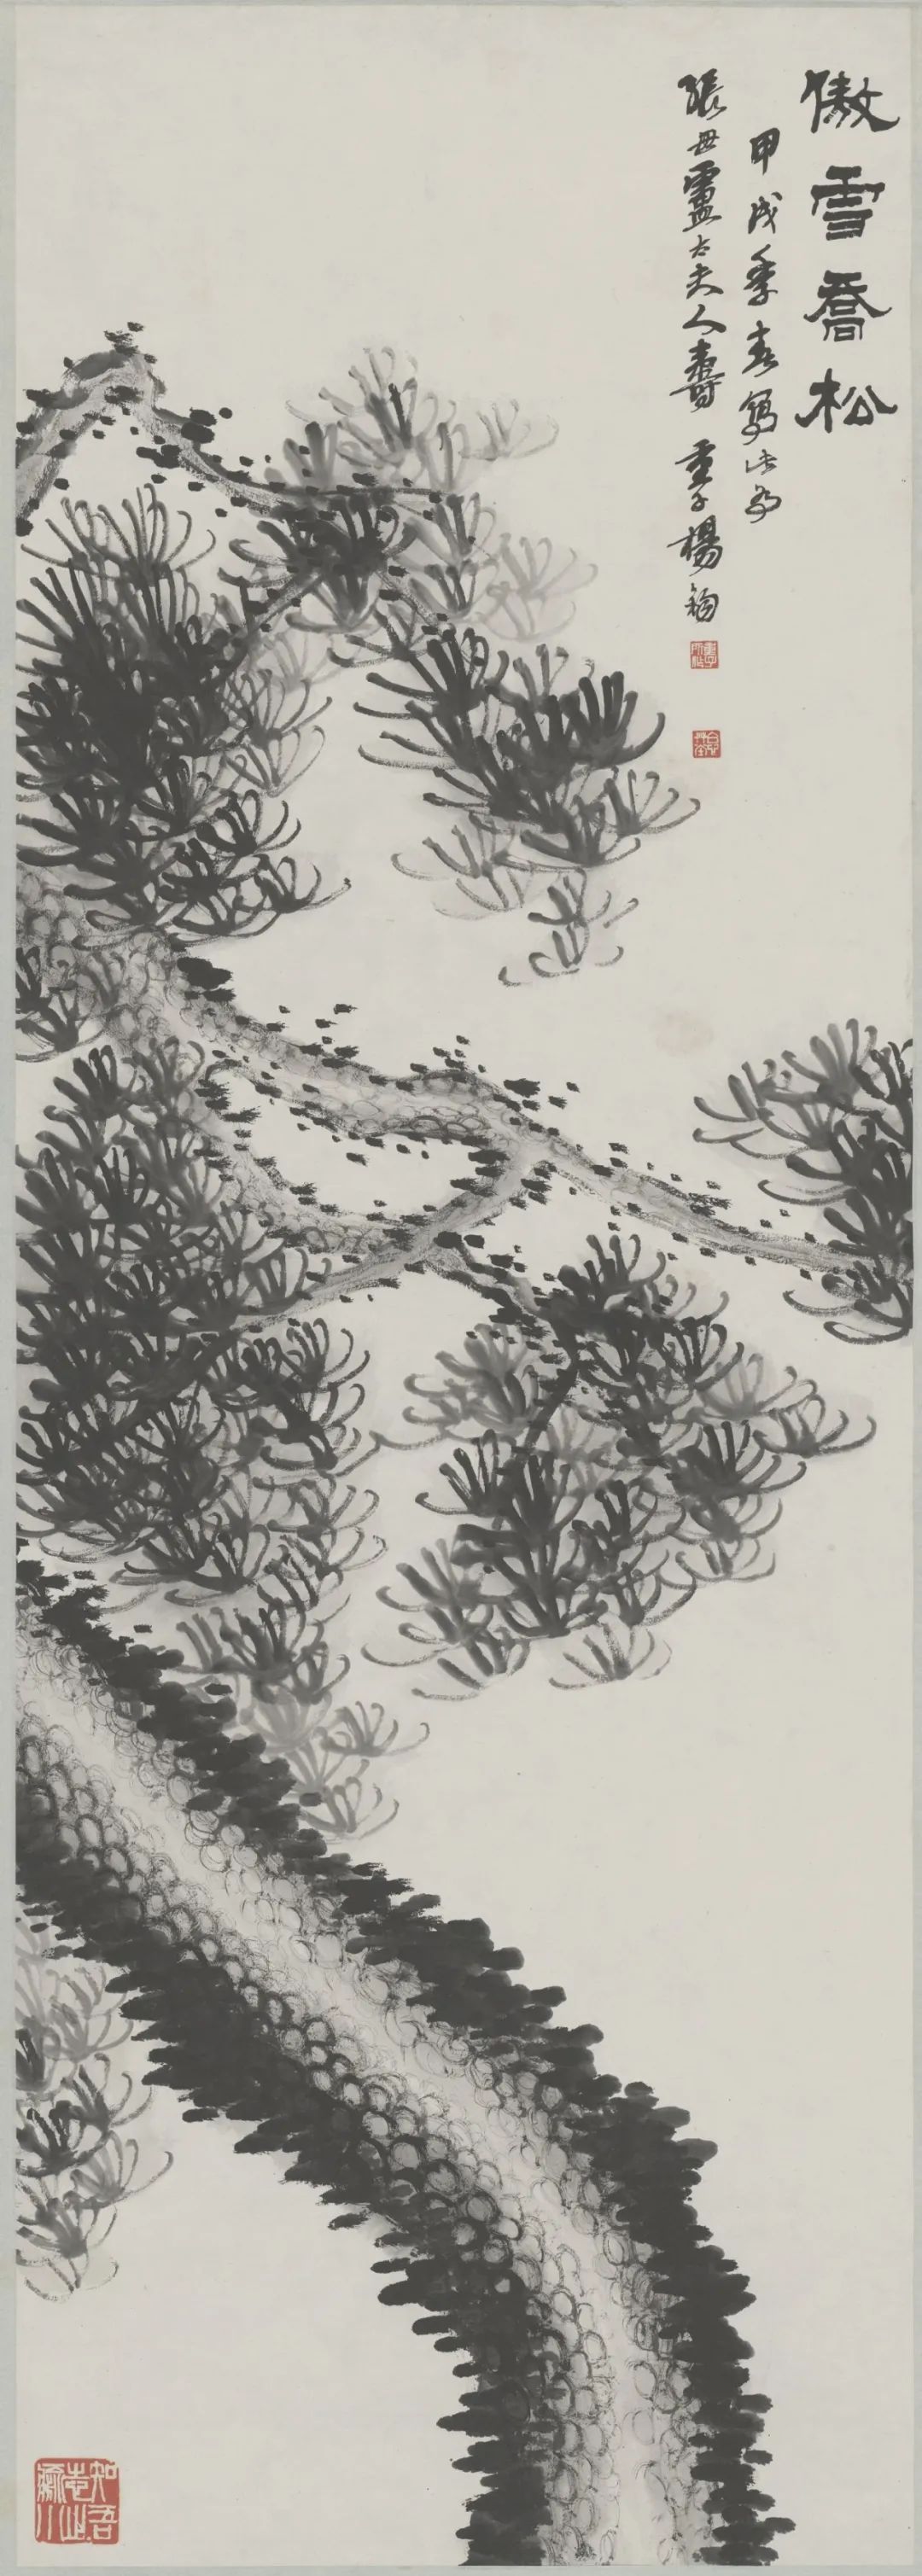 杨钧 绘墨松图轴 纸本 228×60.5厘米